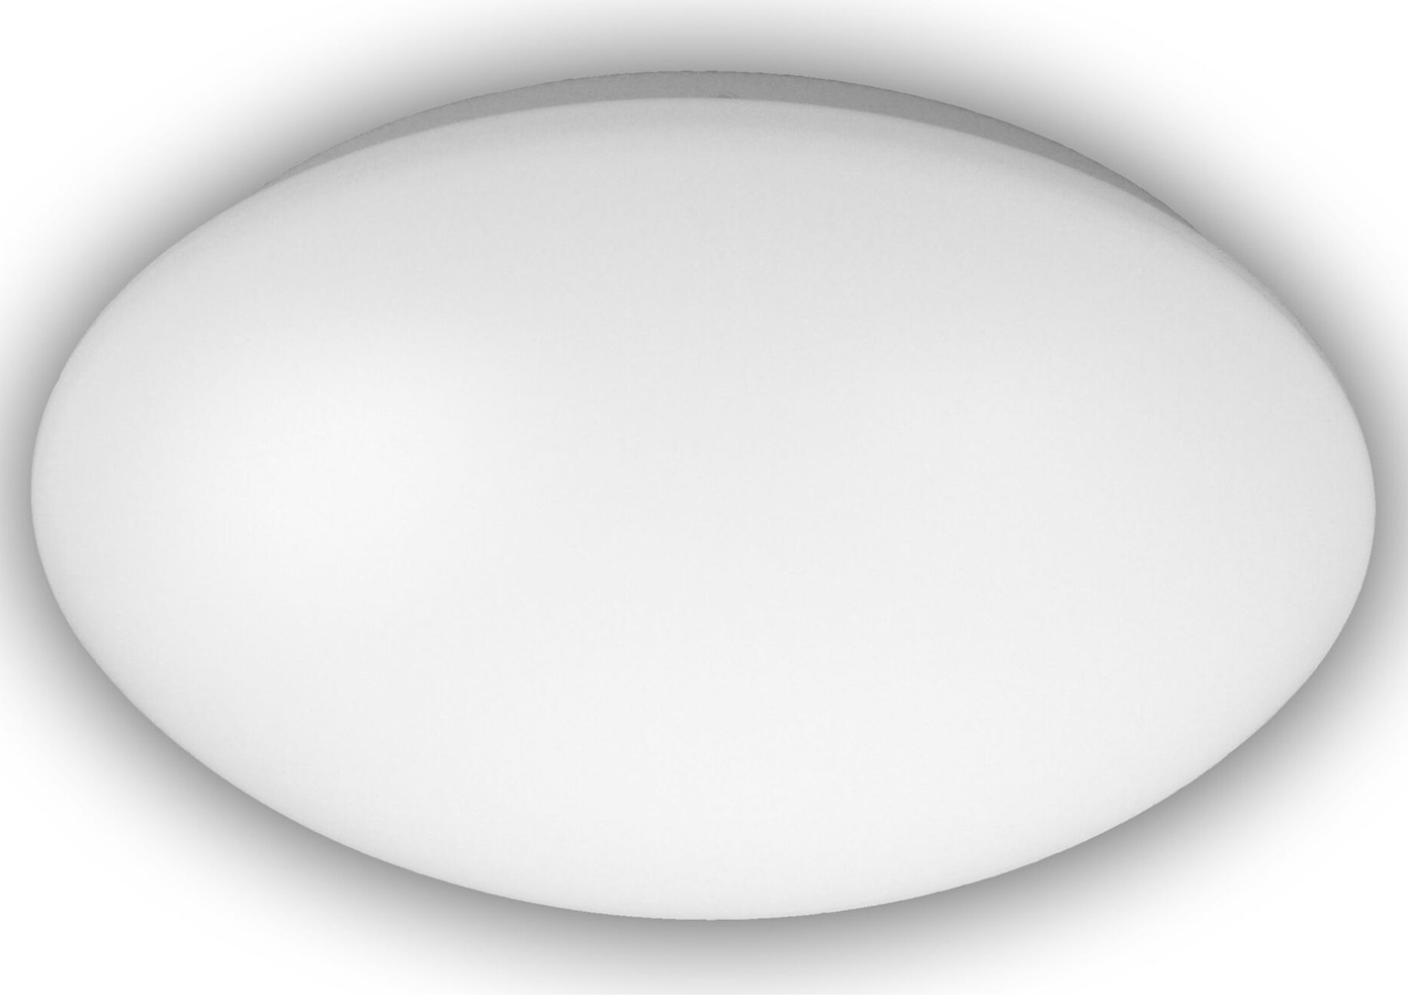 LED Deckenleuchte / Deckenschale rund, Kunststoff opalweiß, Ø 36 cm Bild 1